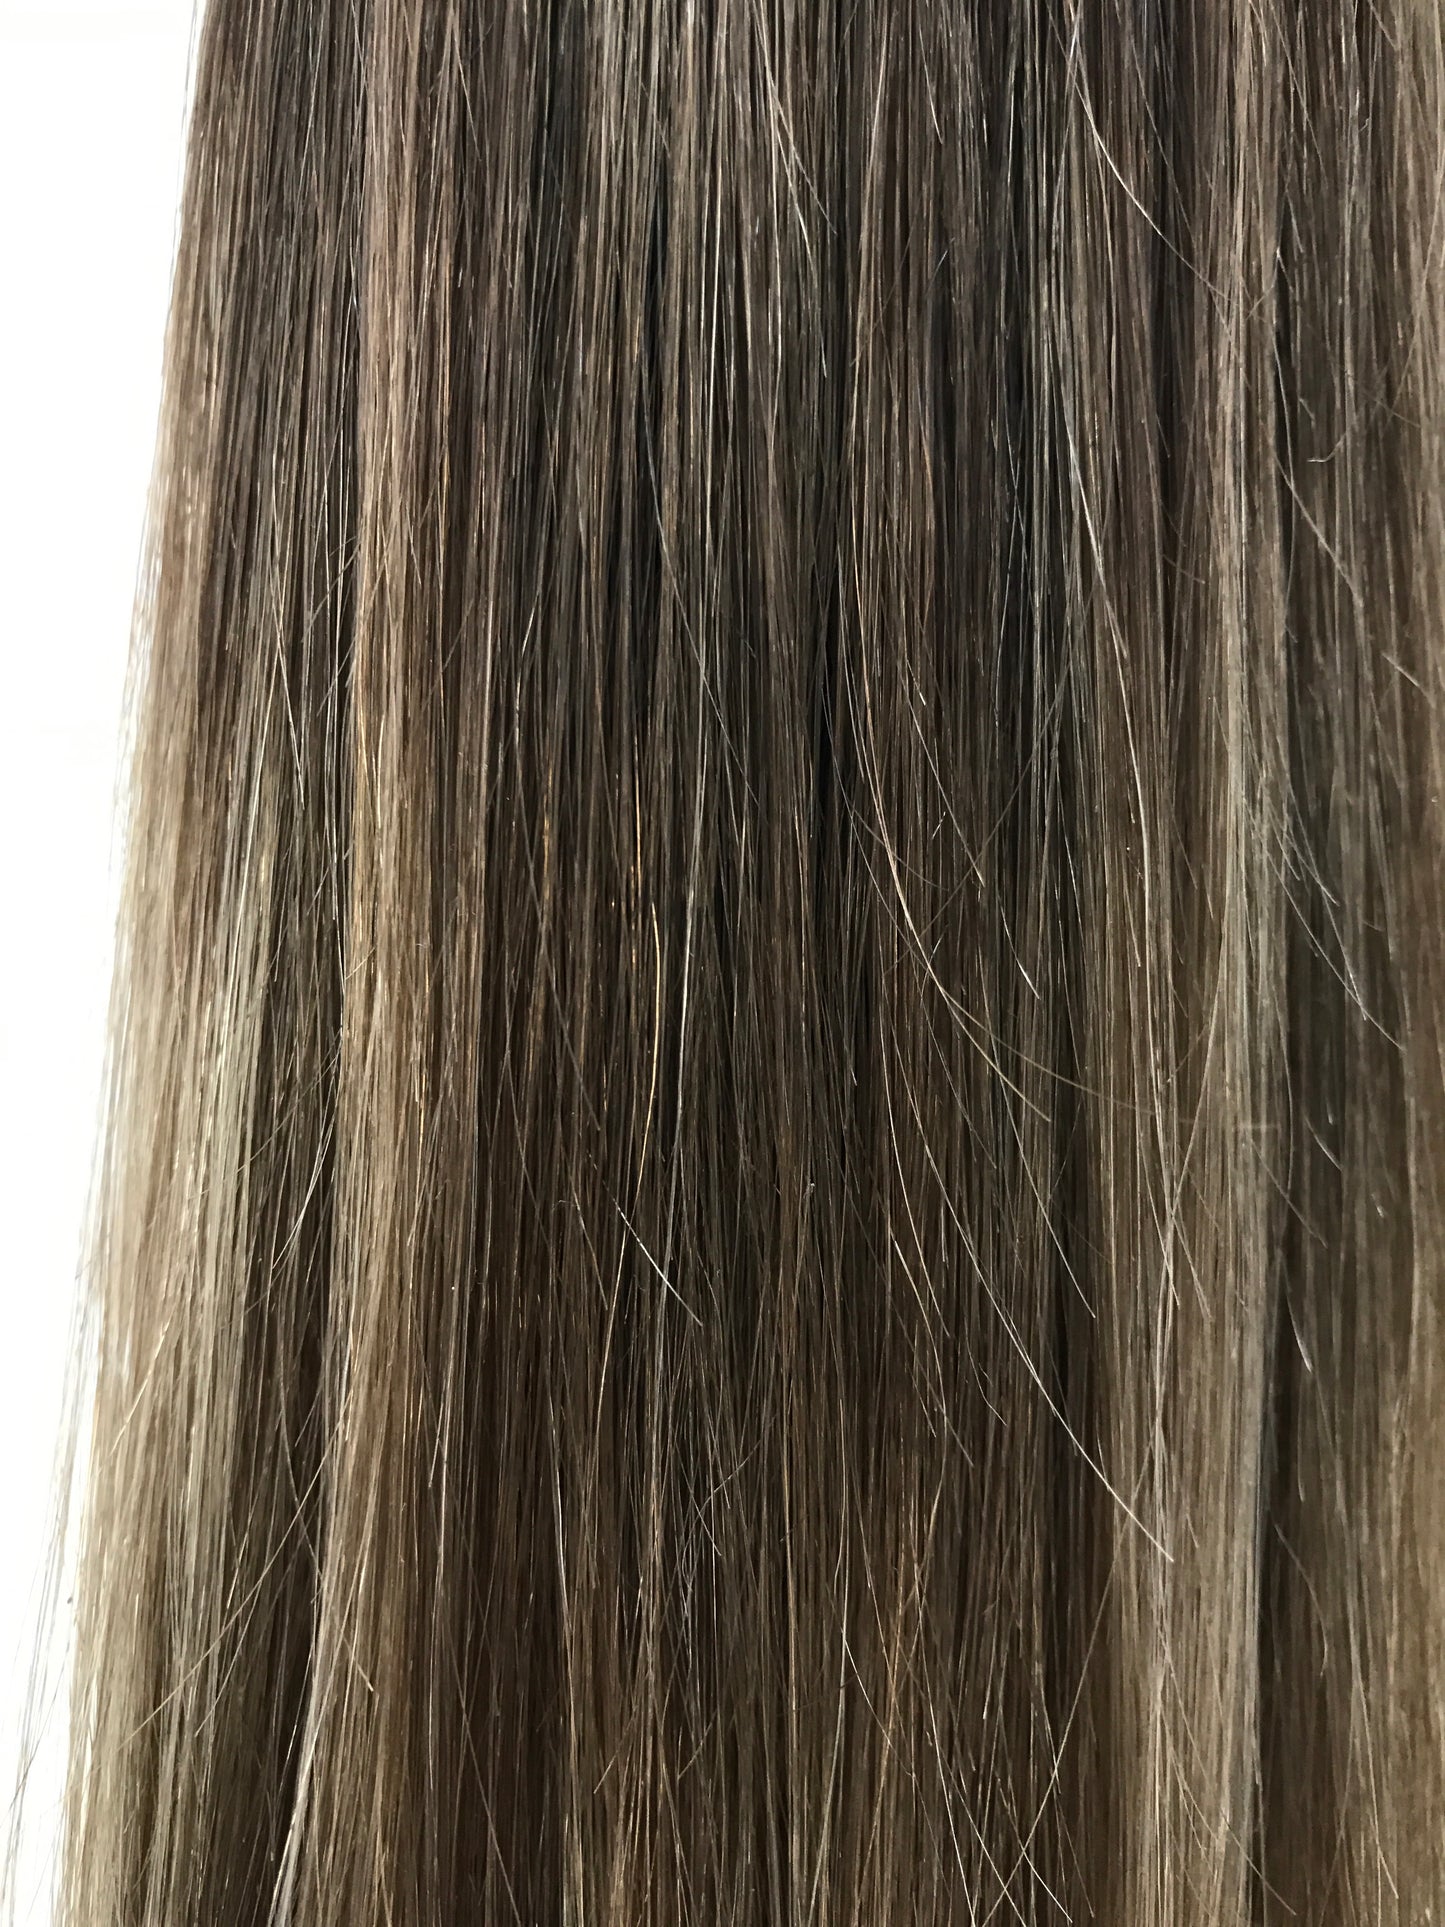 European Remy Human Hair Weft, 20", rak, snabb frakt!